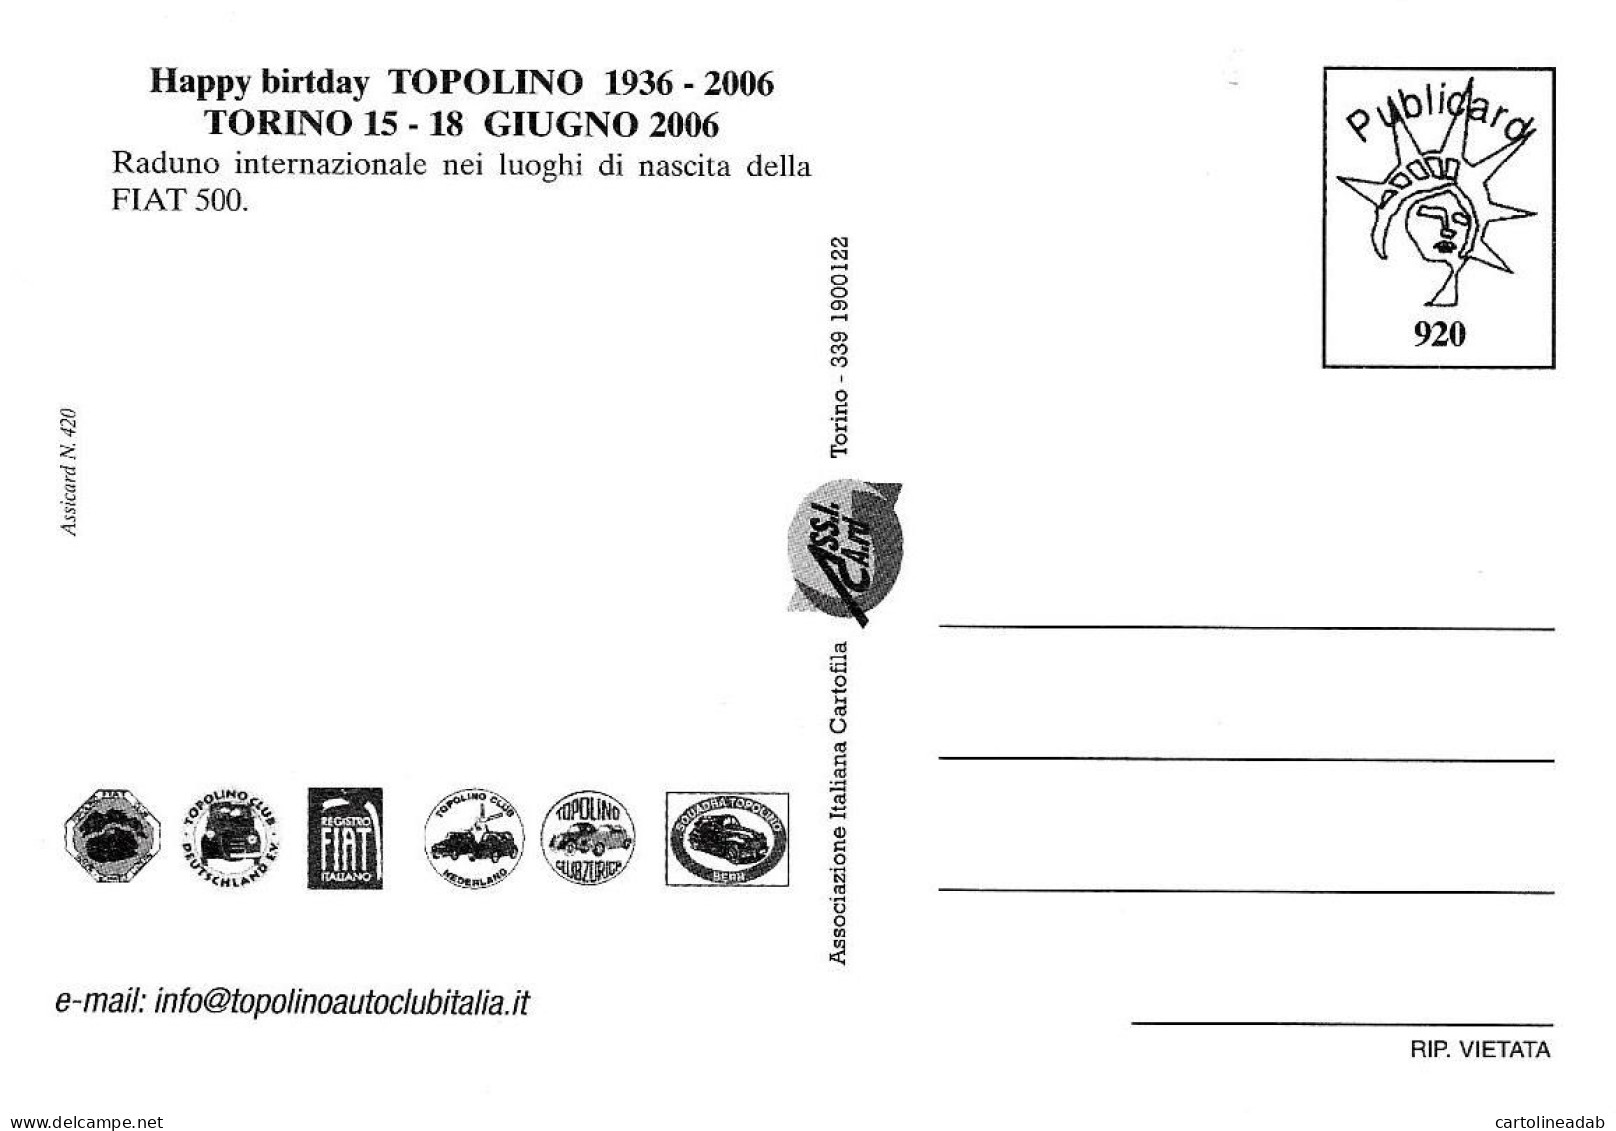 [MD9760] CPM - TORINO MOLE ANTONELLIANA - HAPPY BIRTHDAY TOPOLINO FIAT - PUBLICARD 920 - PERFETTA - NV - Mole Antonelliana